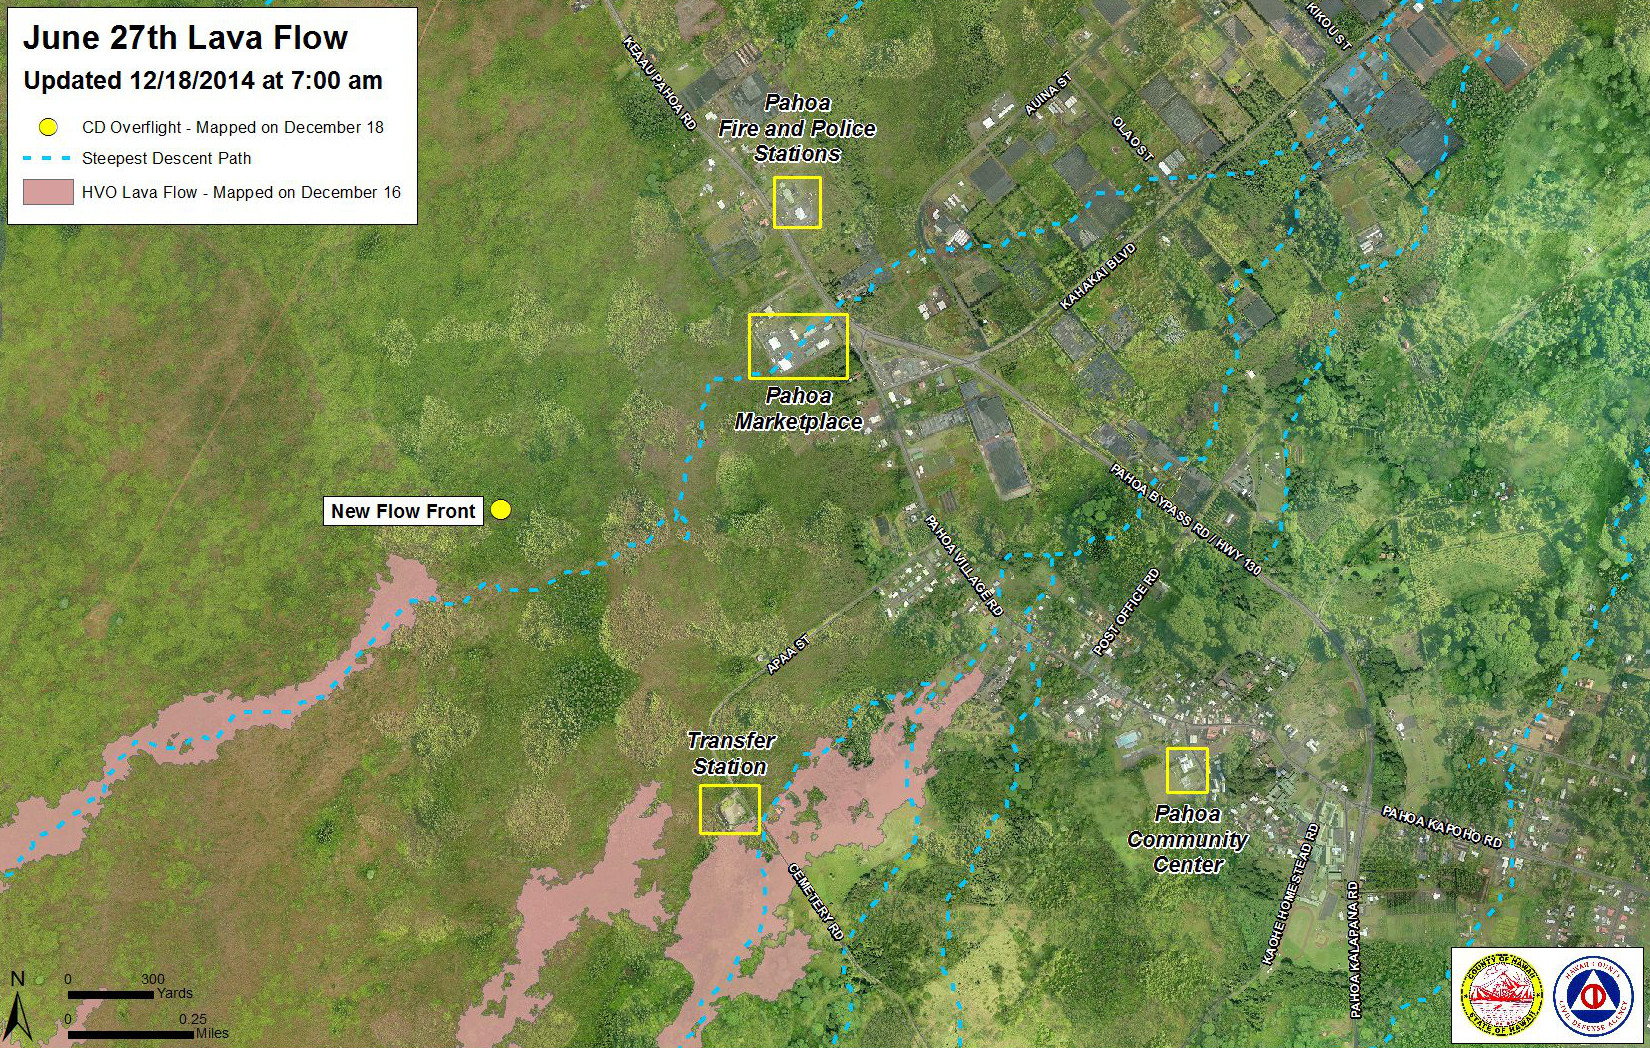 Civil Defense Lava Flow Maps - Updated Thursday, 12/18/14 at 7:00 am